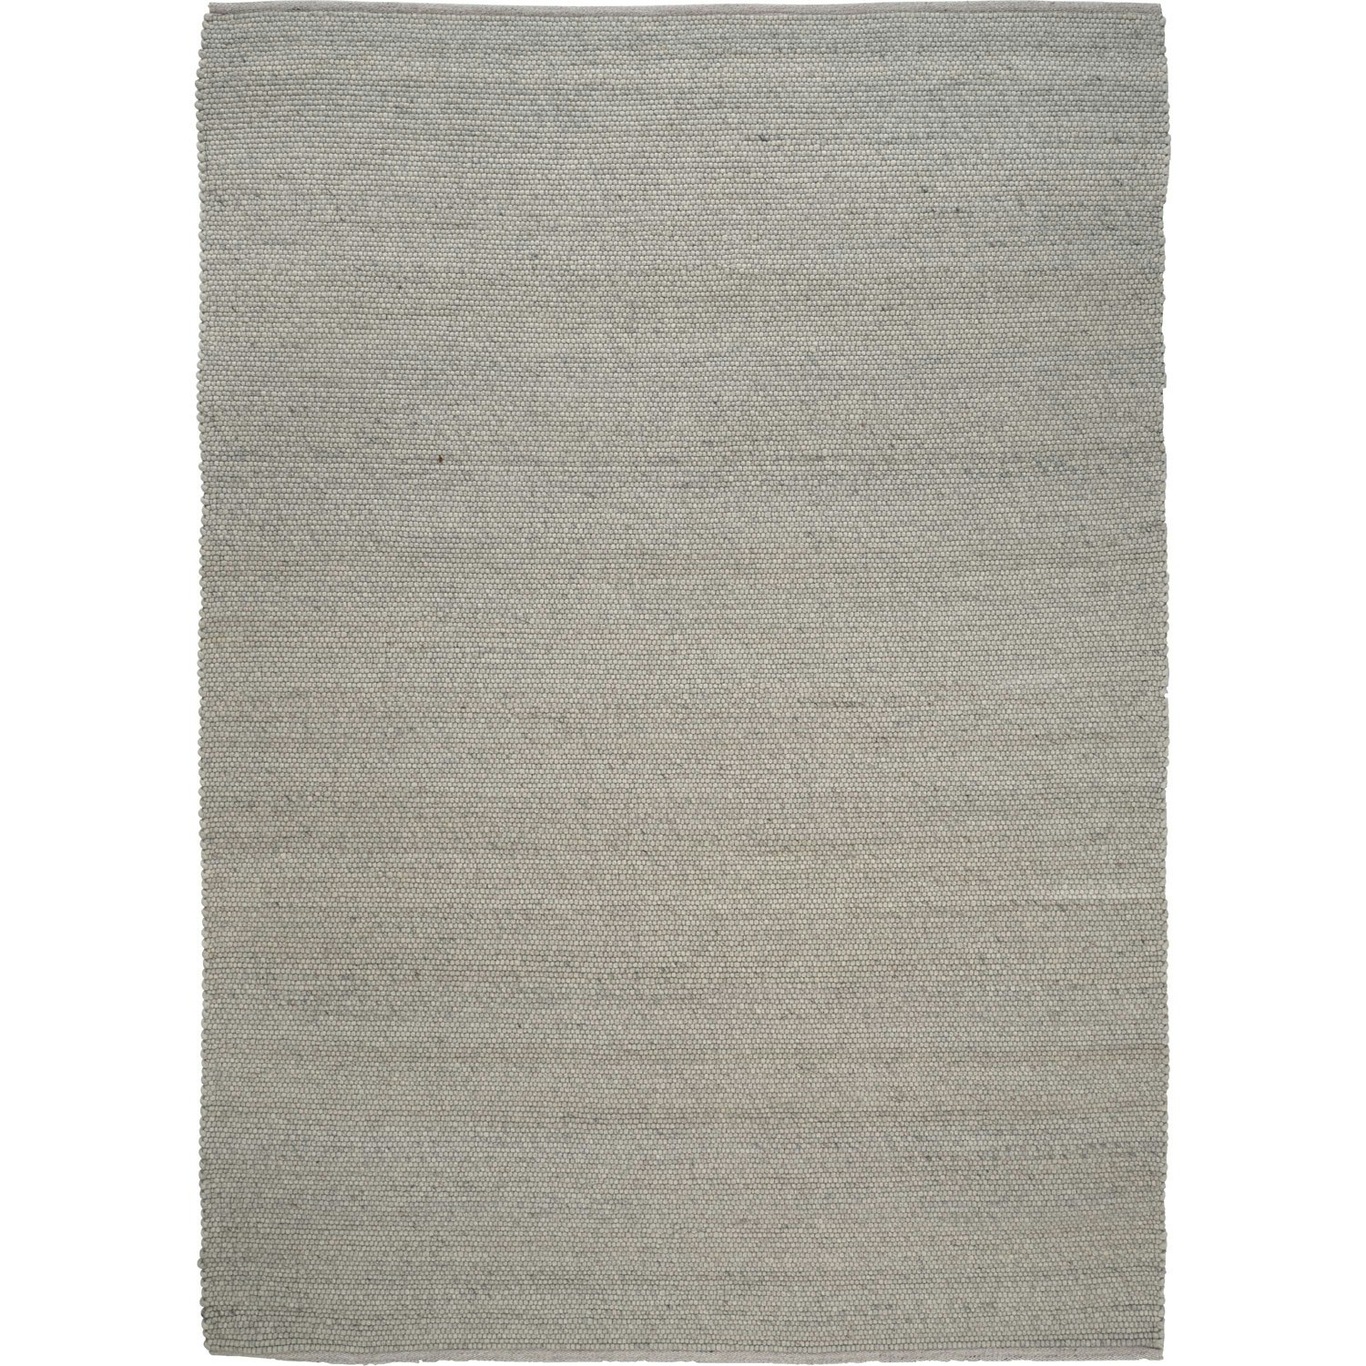 Merino Matto 250x350 cm, Concrete